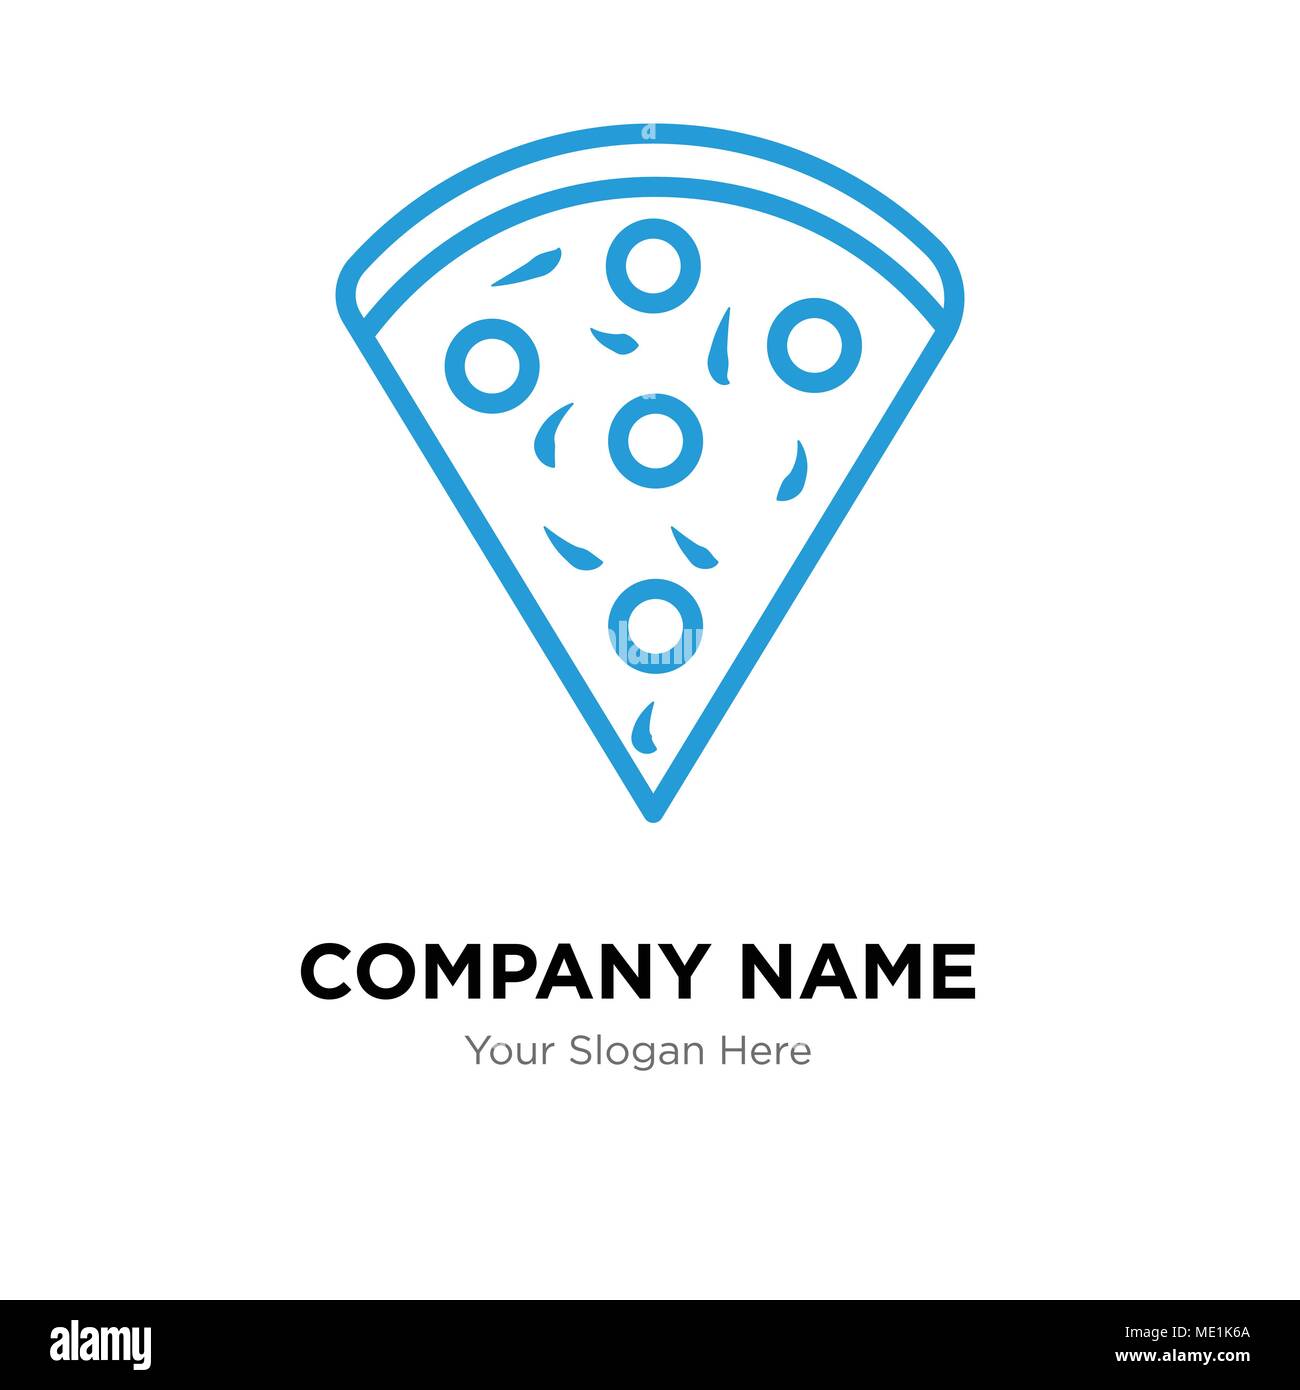 Confetti company logo design template, Business corporate vector icon Stock Vector